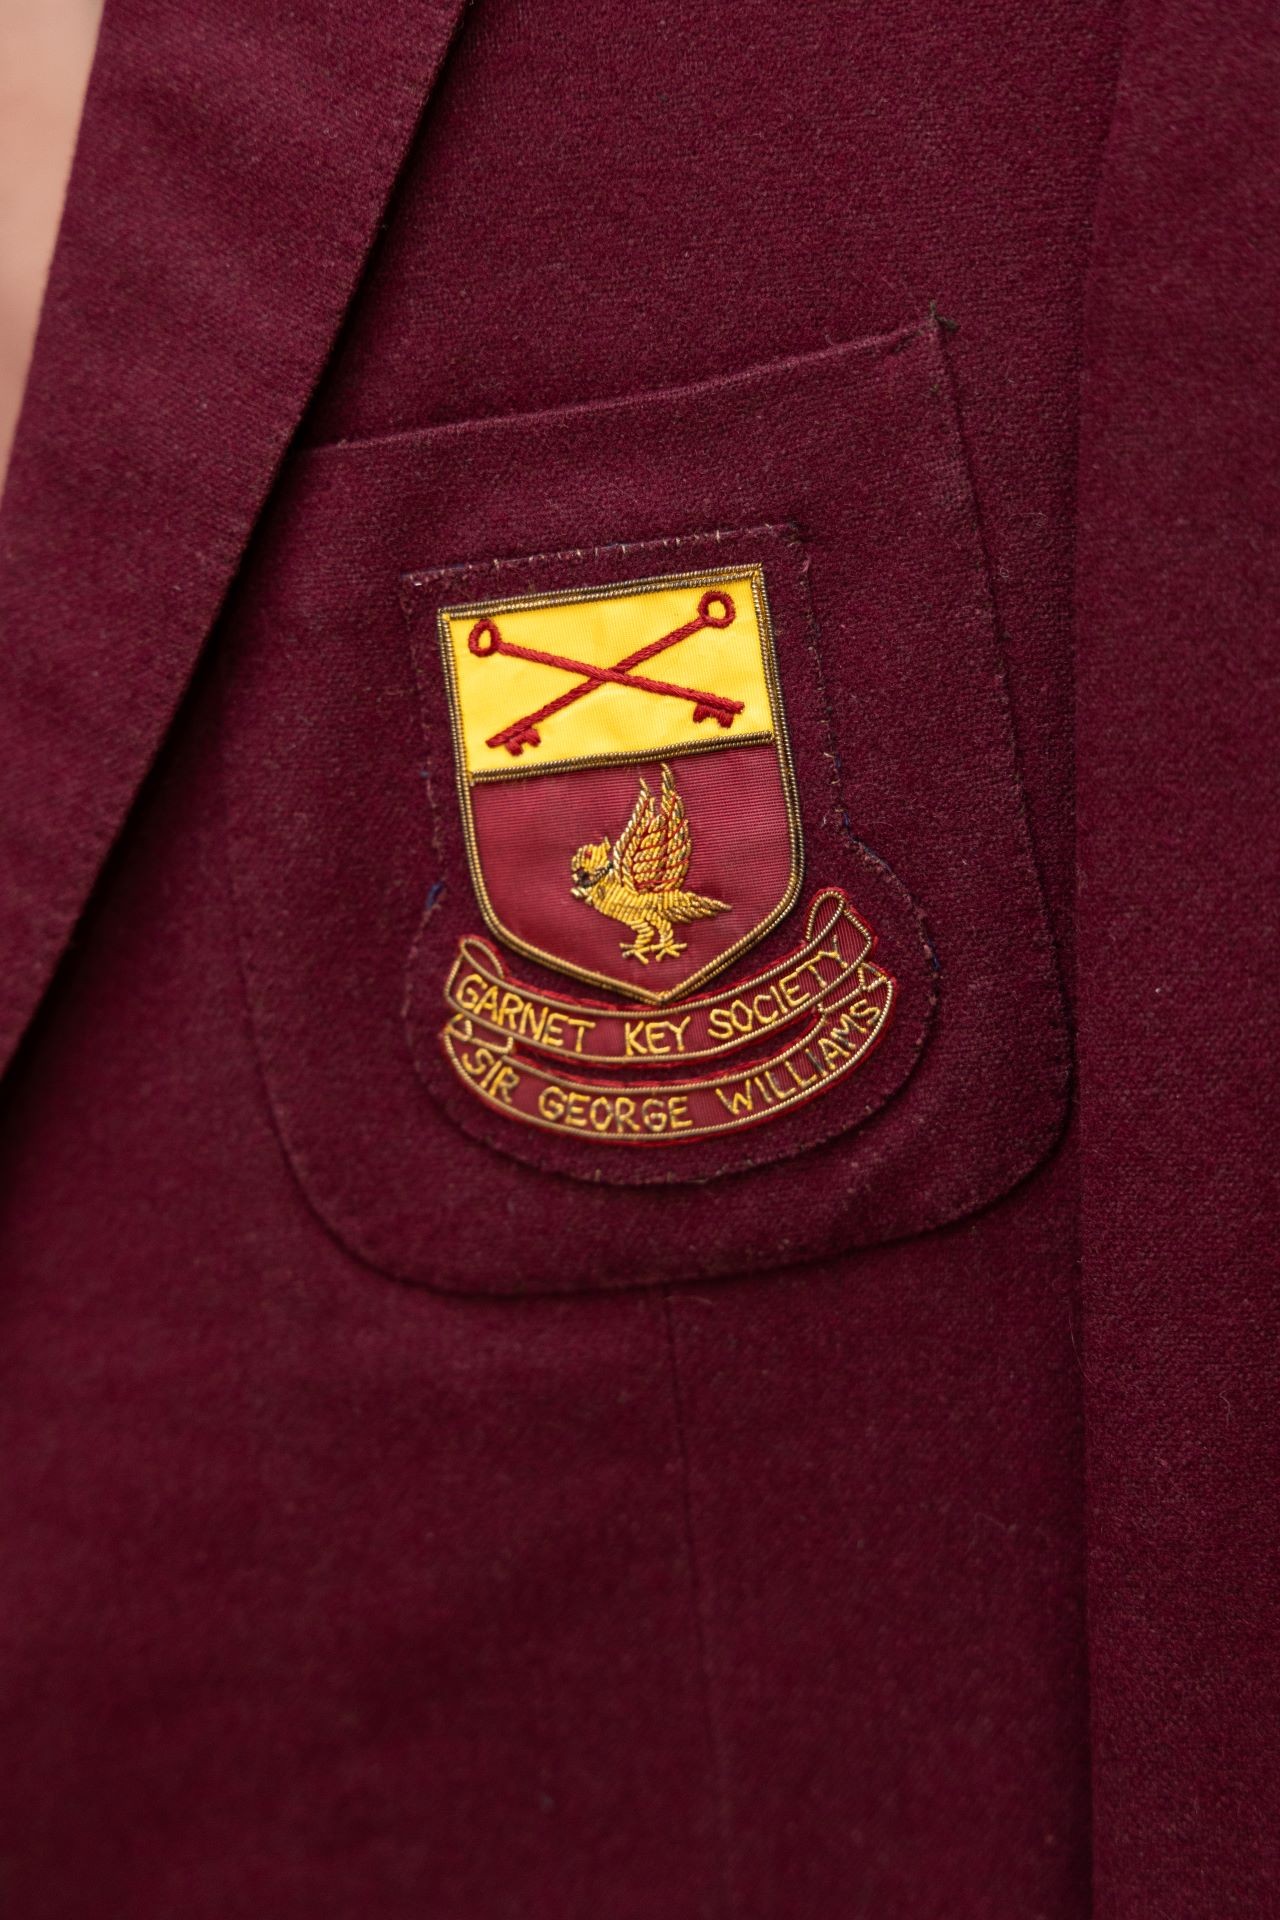 Gros plan d'une poche de blazer vintage sur laquelle est brodé un écusson de la Garnet Key Society de l'université Sir George Williams.